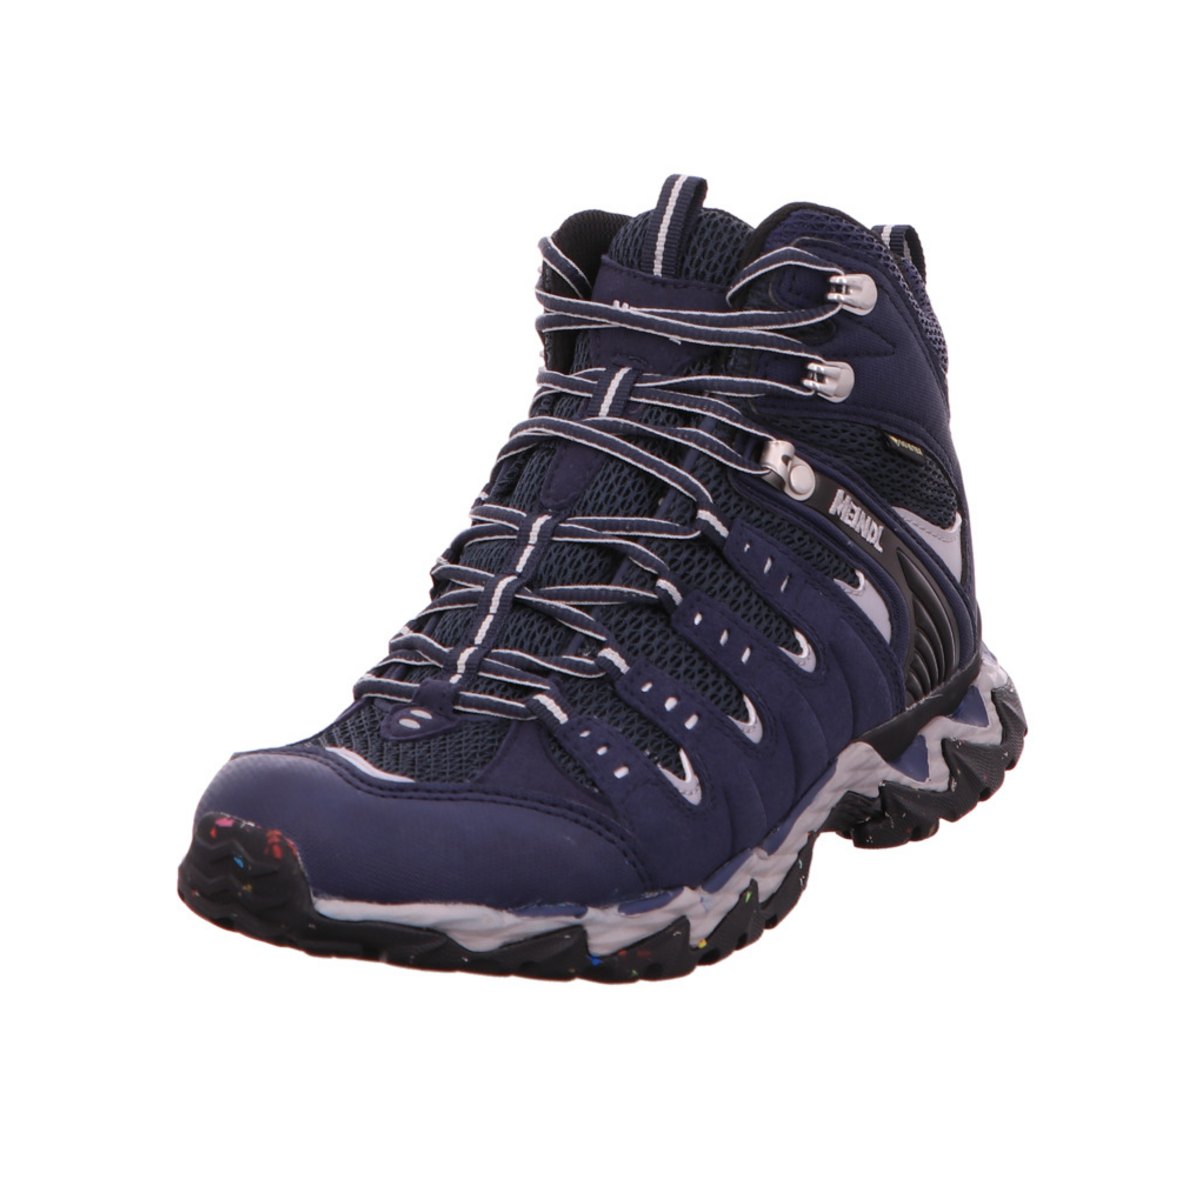 Походная обувь MEINDL Outdoorschuhe, цвет dunkel-blau кроссовки skechers zapatillas blau dunkel